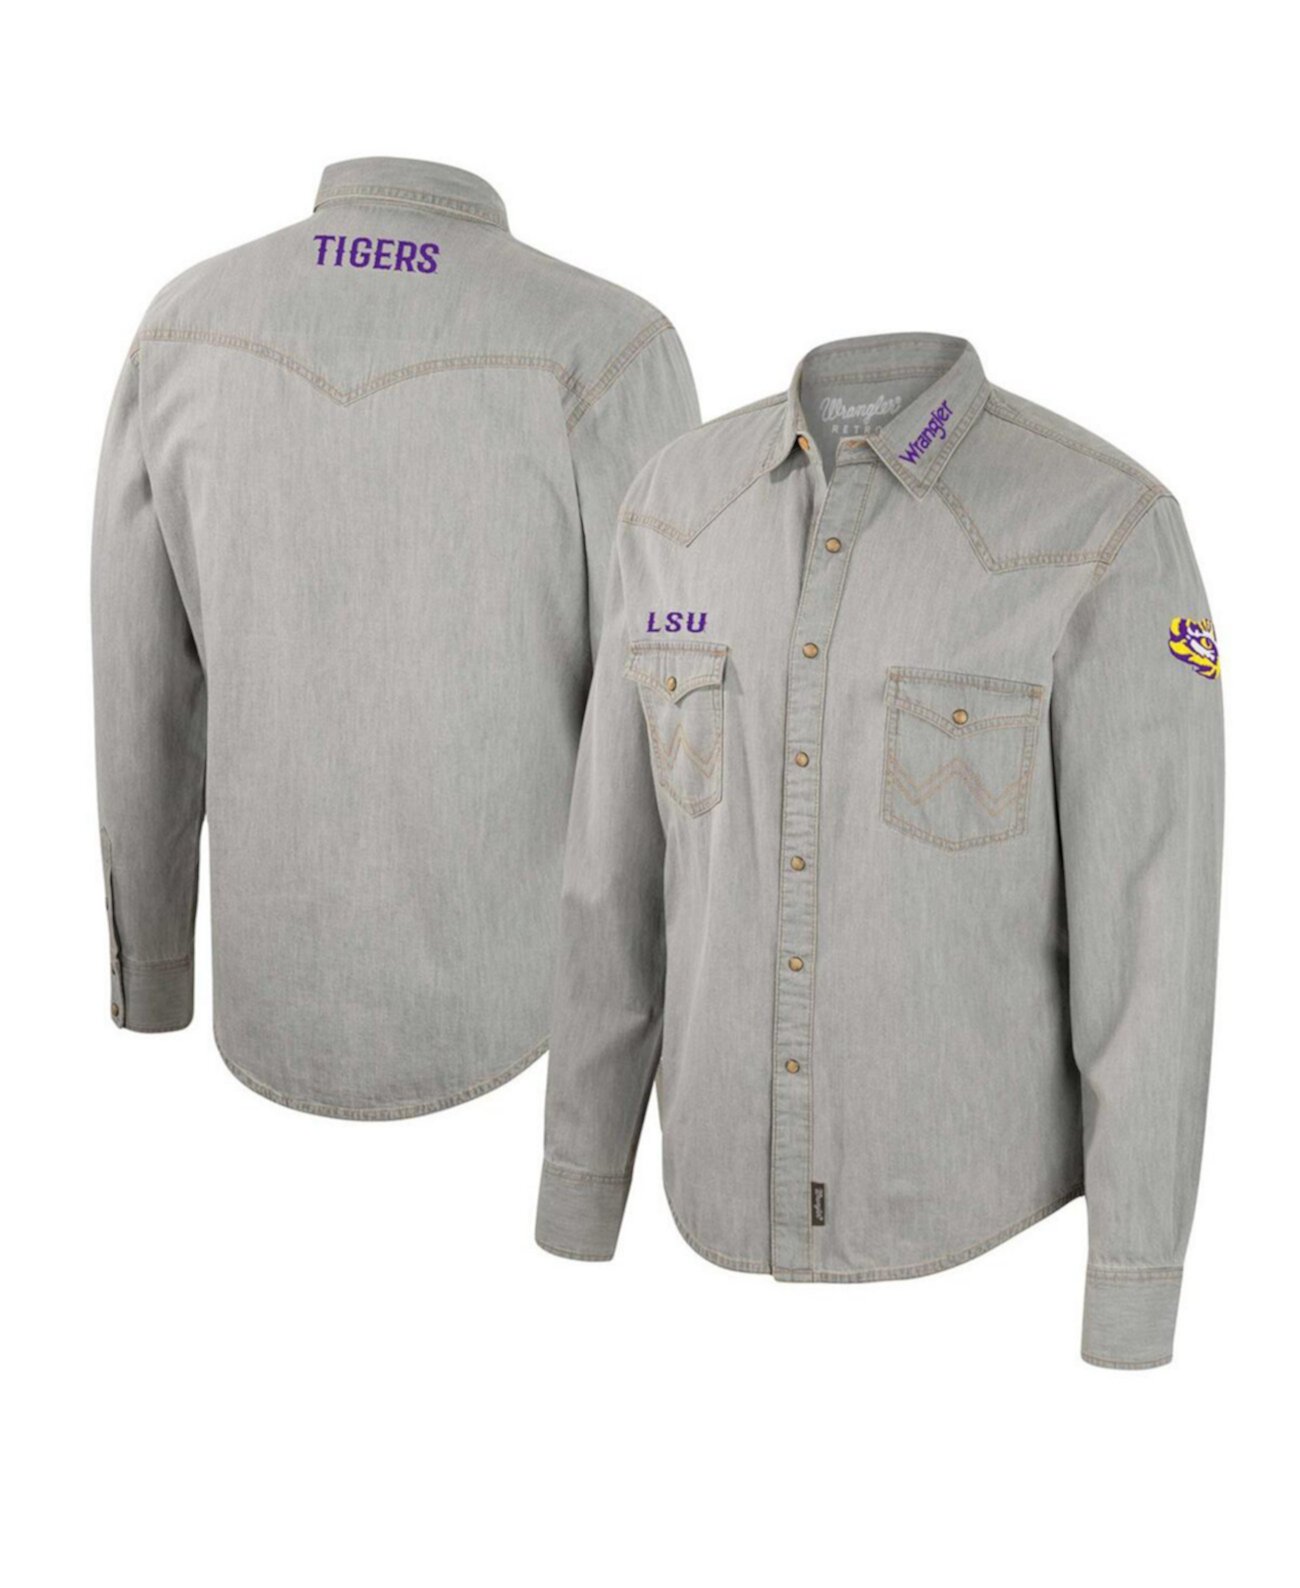 Мужская серая рубашка с длинными рукавами и застежкой в стиле вестерн x Wrangler LSU Tigers в ковбойском стиле Colosseum